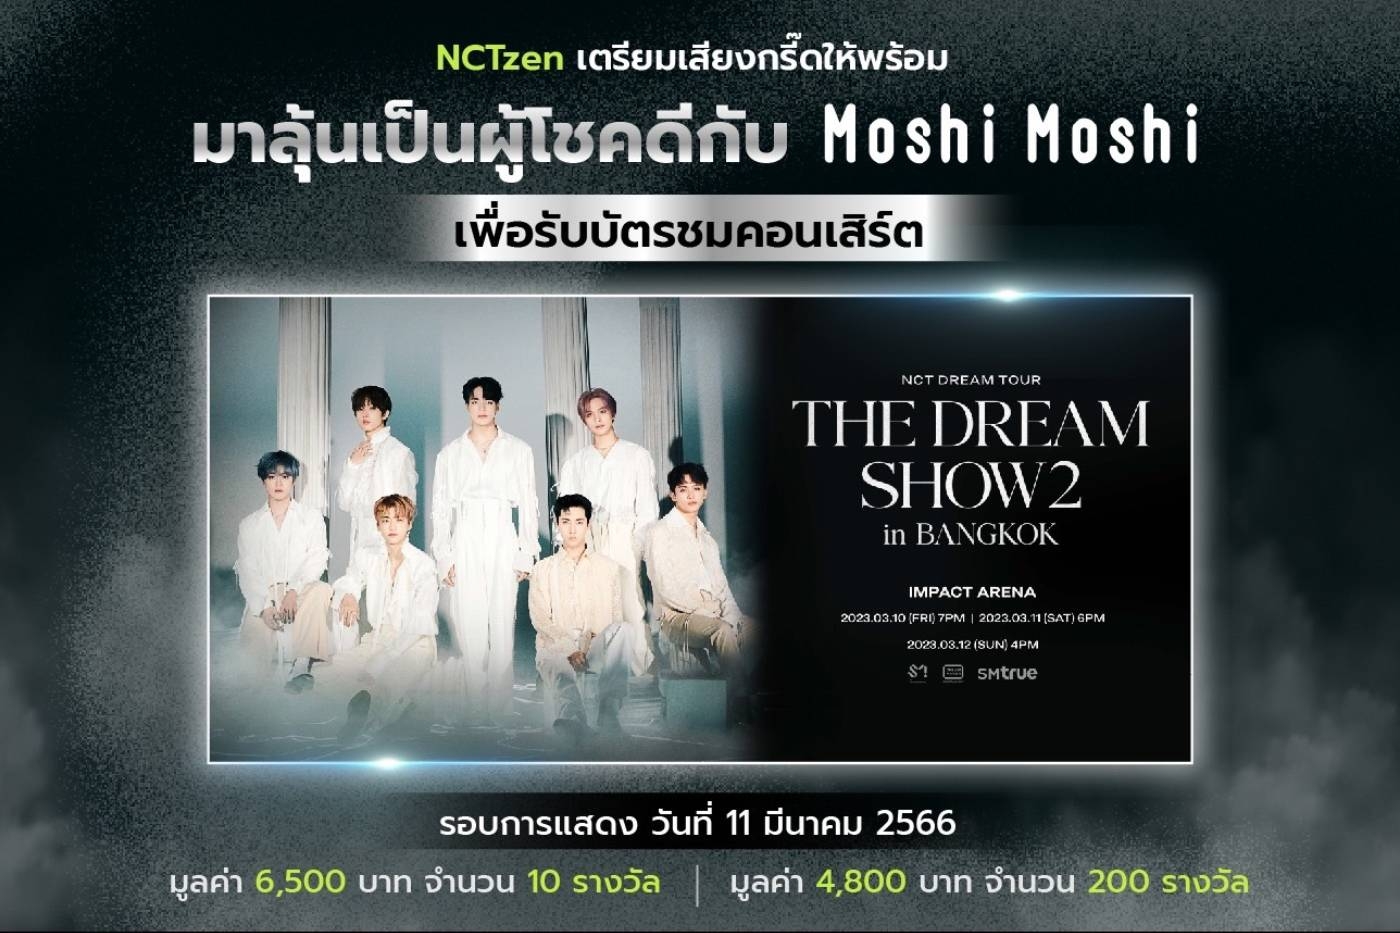 ร่วมลุ้นเป็นผู้โชคดี เข้าชมคอนเสิร์ต NCT DREAM TOUR THE DREAM SHOW2 : In A DREAM in BANGKOK กับ Moshi Moshi